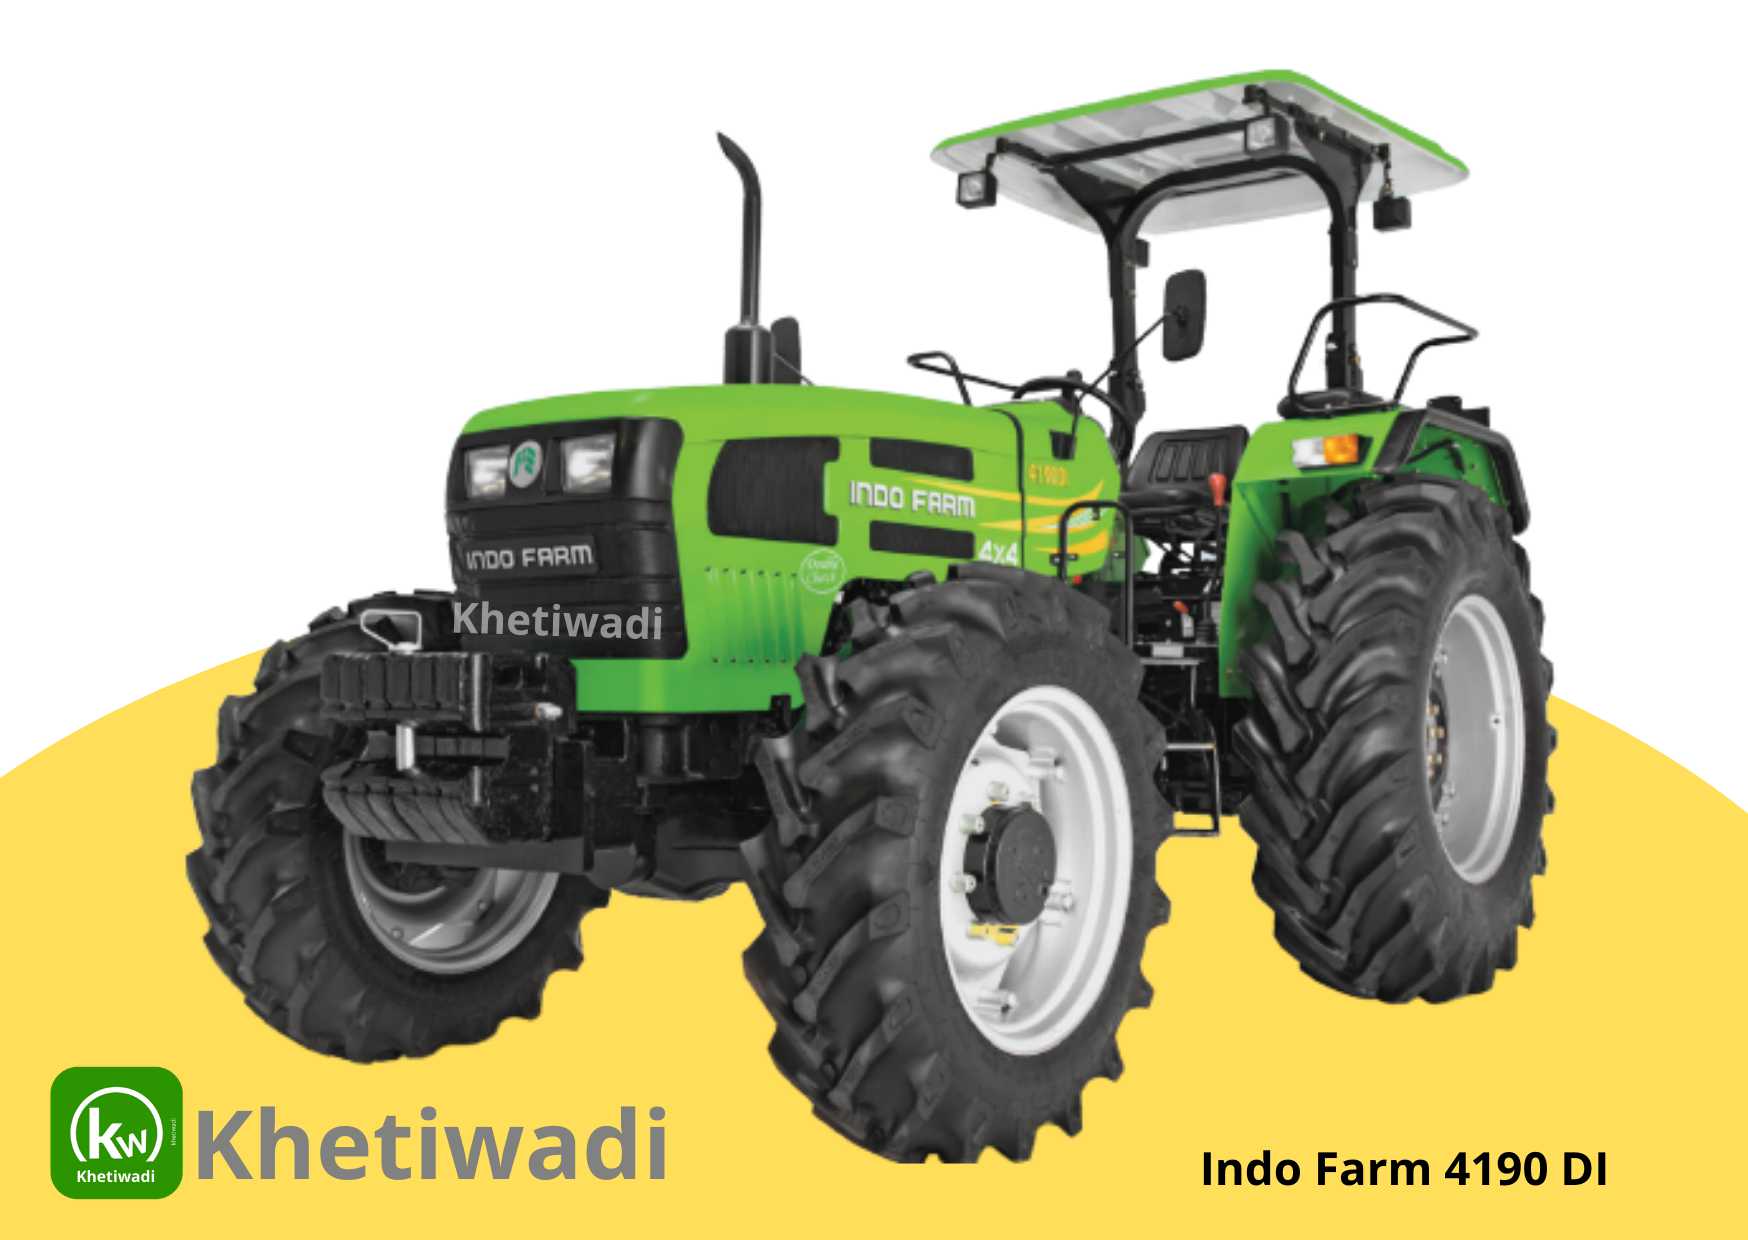 Indo Farm 4190 DI image